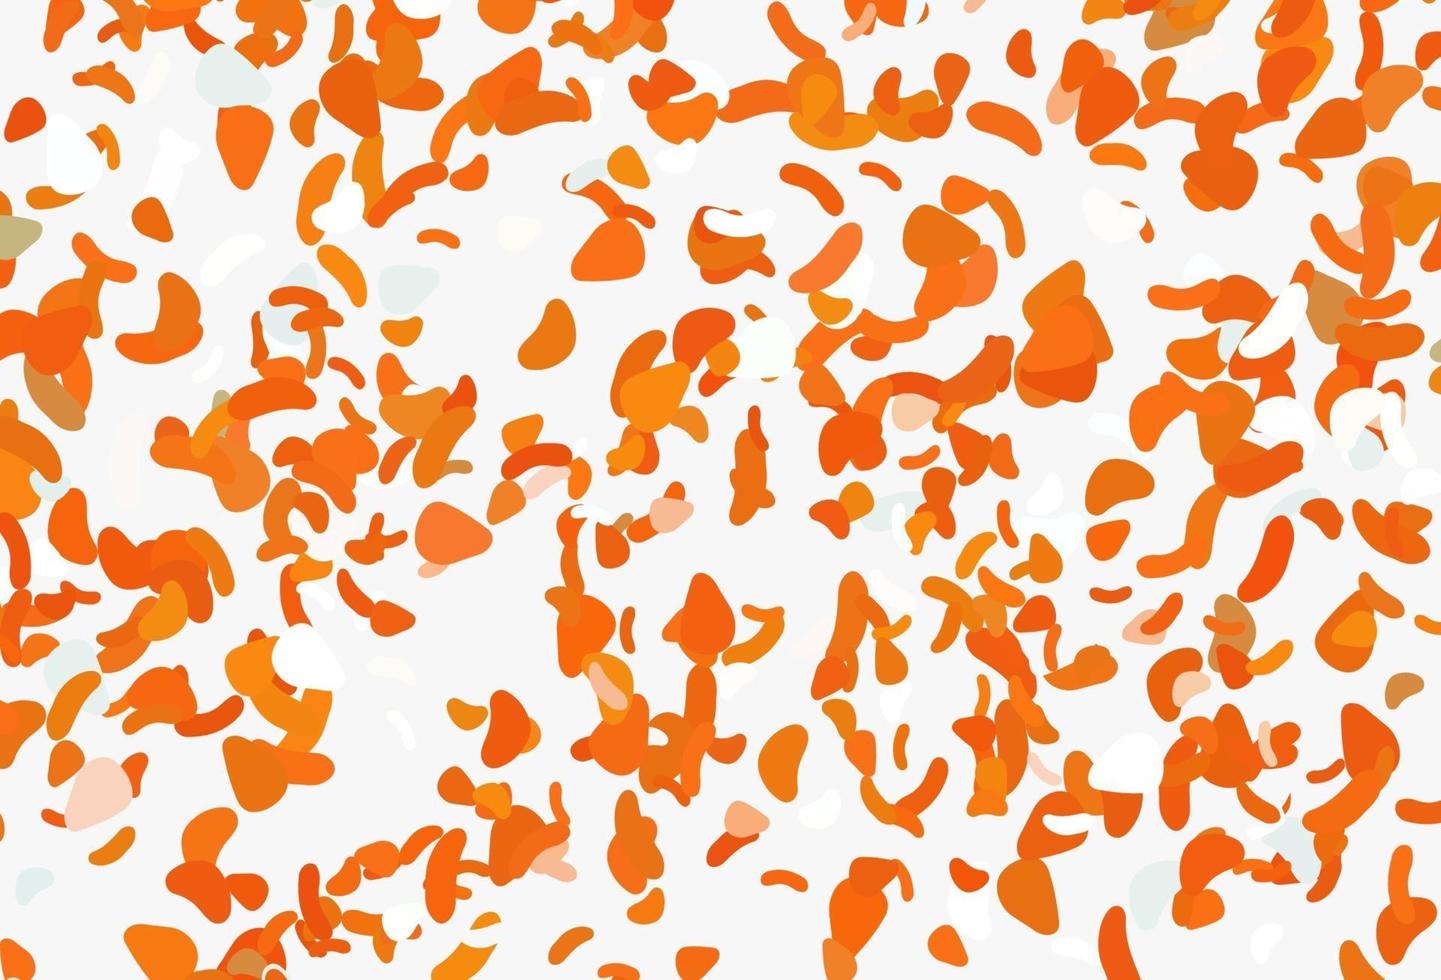 toile de fond vecteur orange clair avec des formes abstraites.